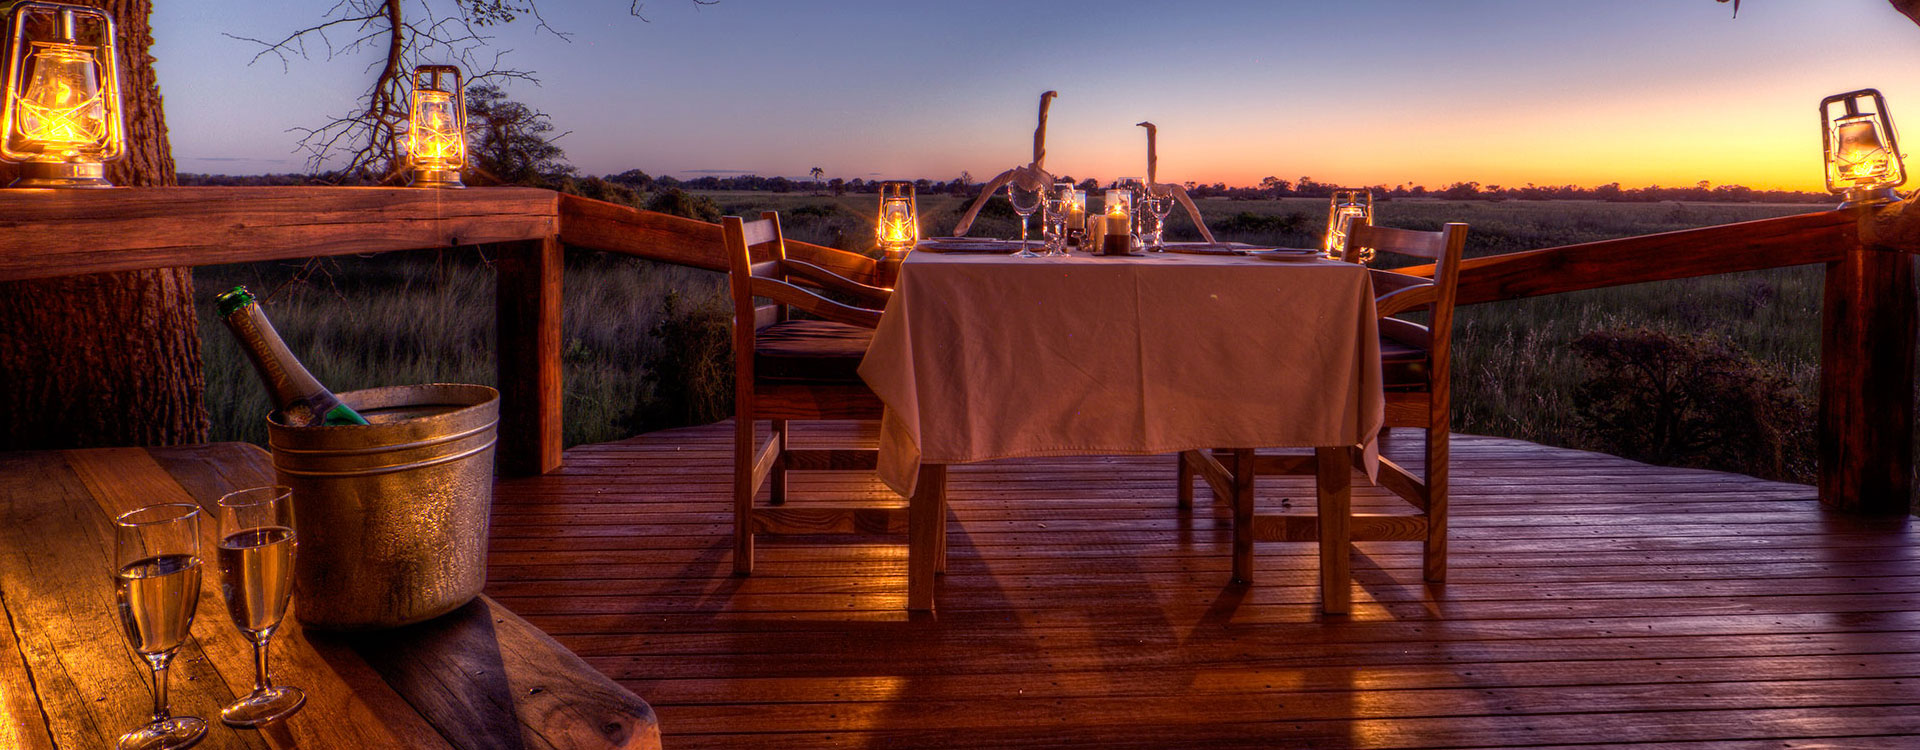 6 Day Luxury Botswana Honeymoon Safari